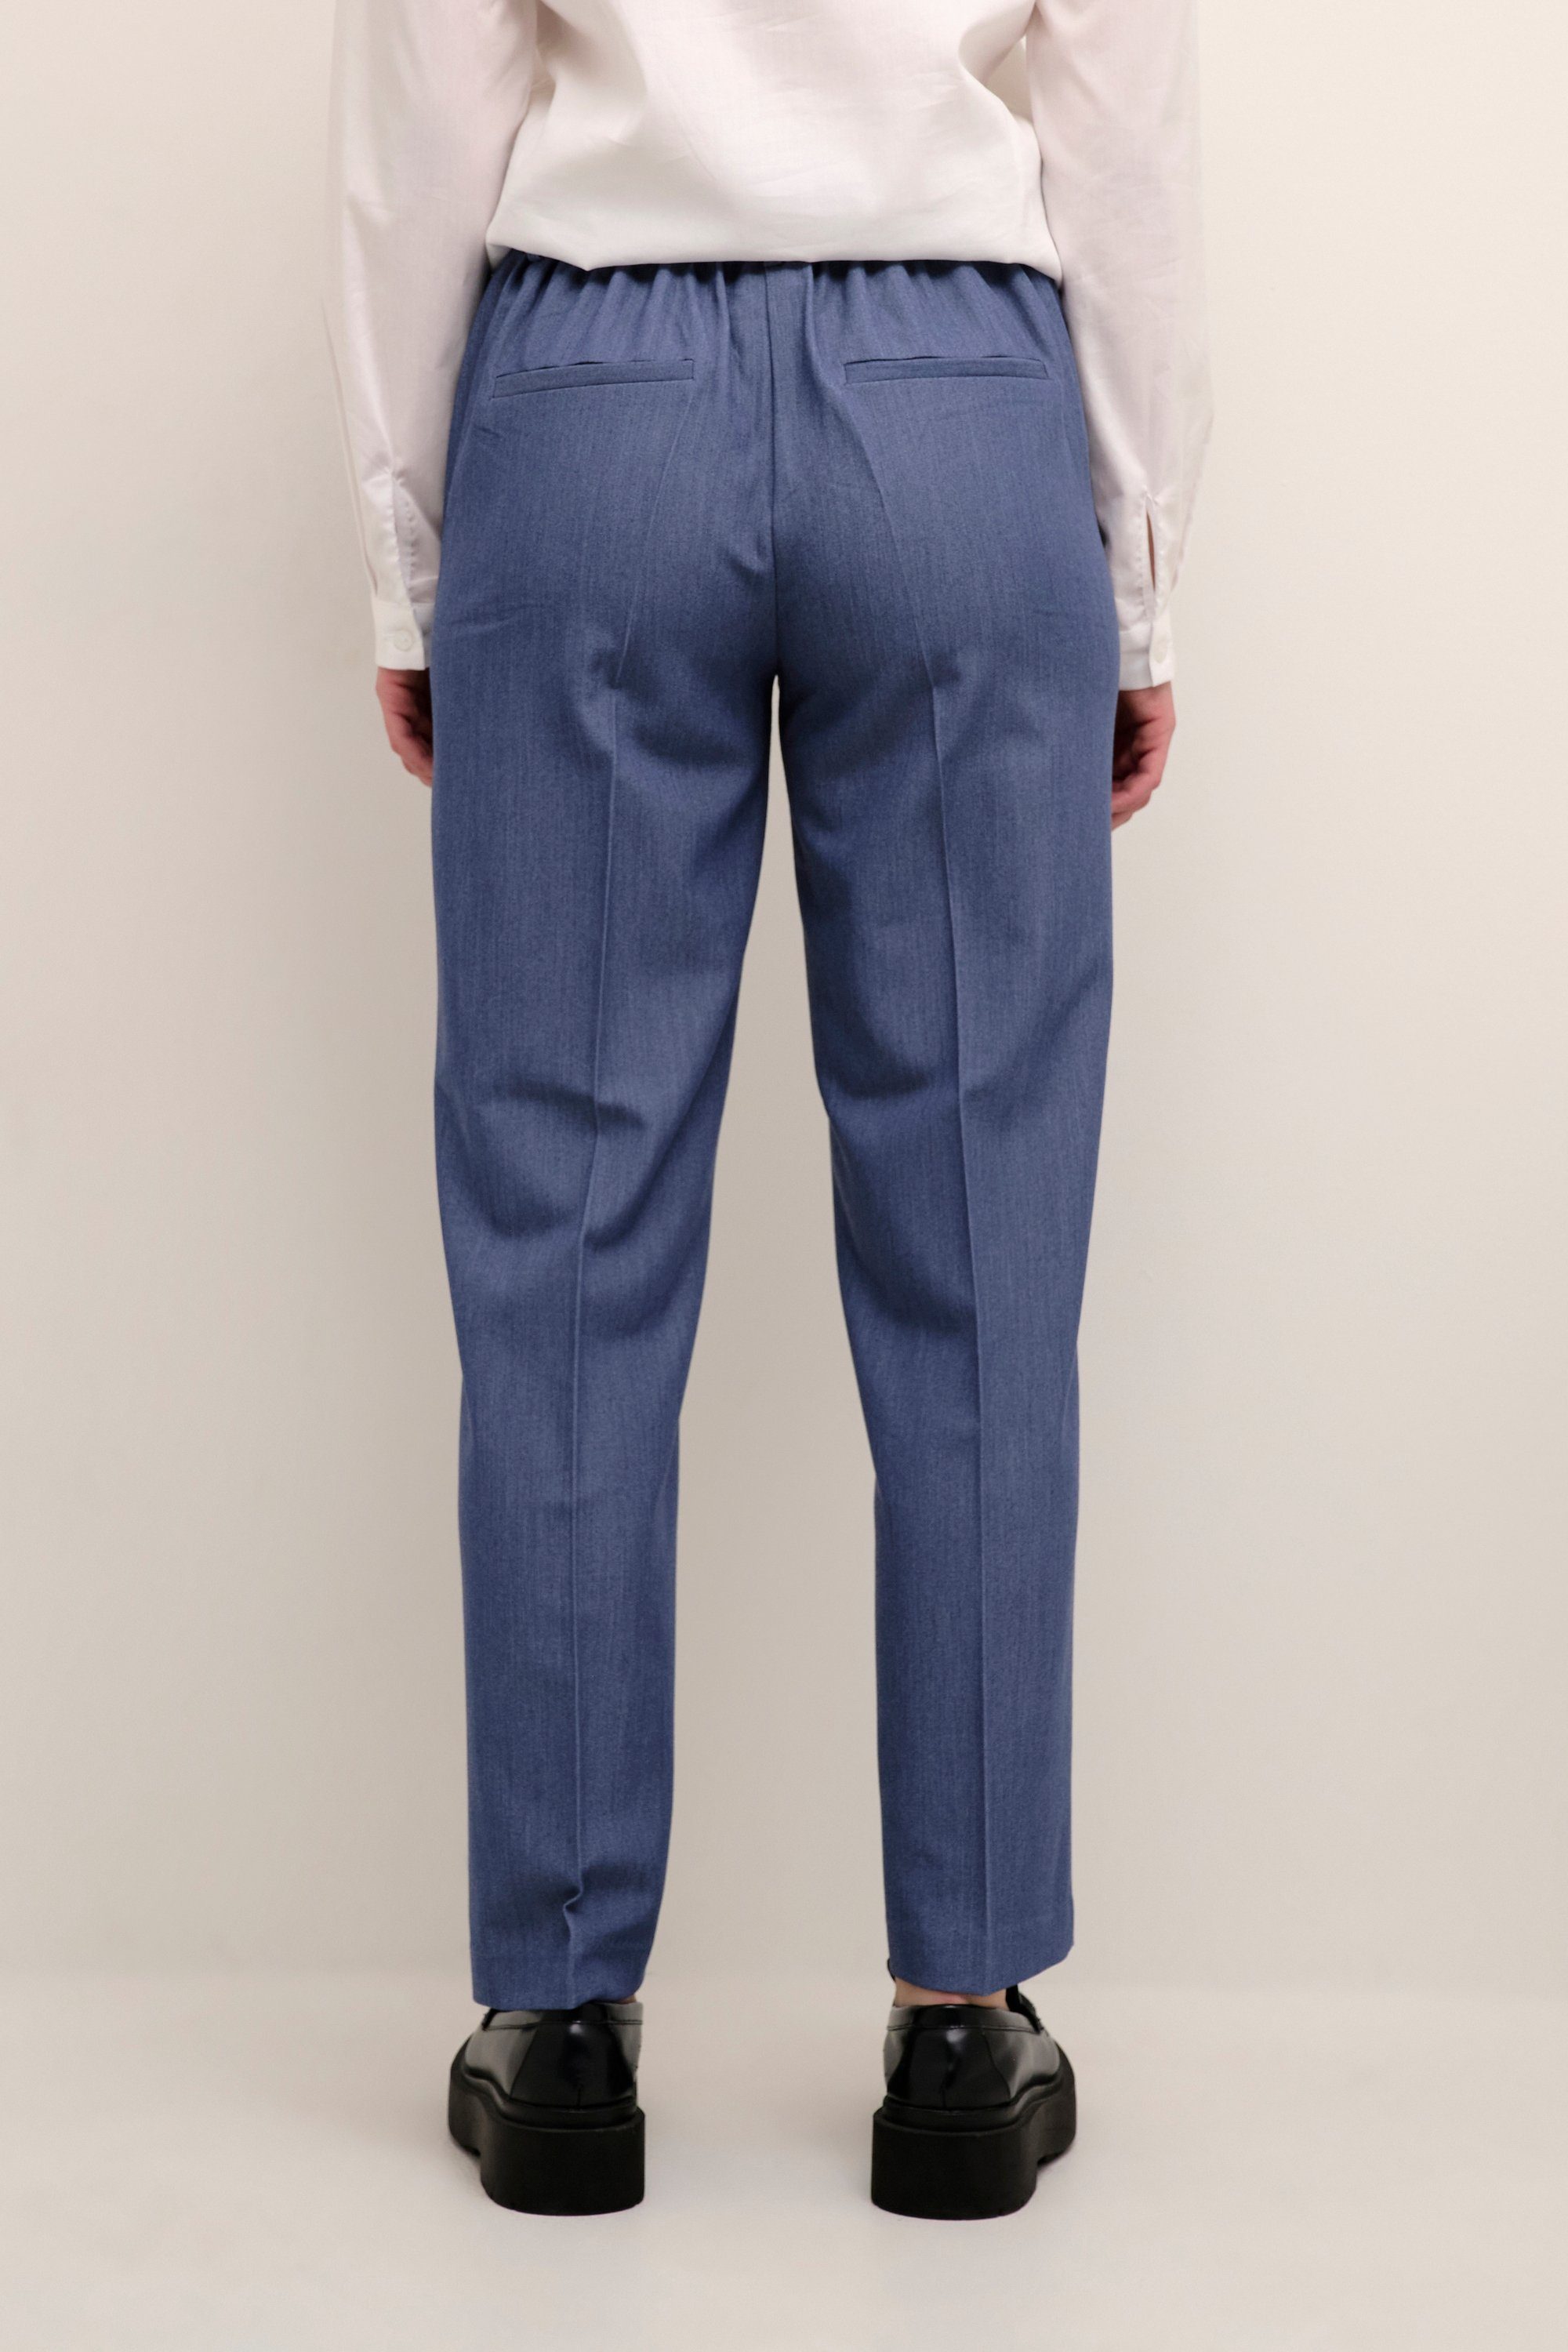 KAsakura Vintage Anzughose KAFFE Indigo Pants Suiting